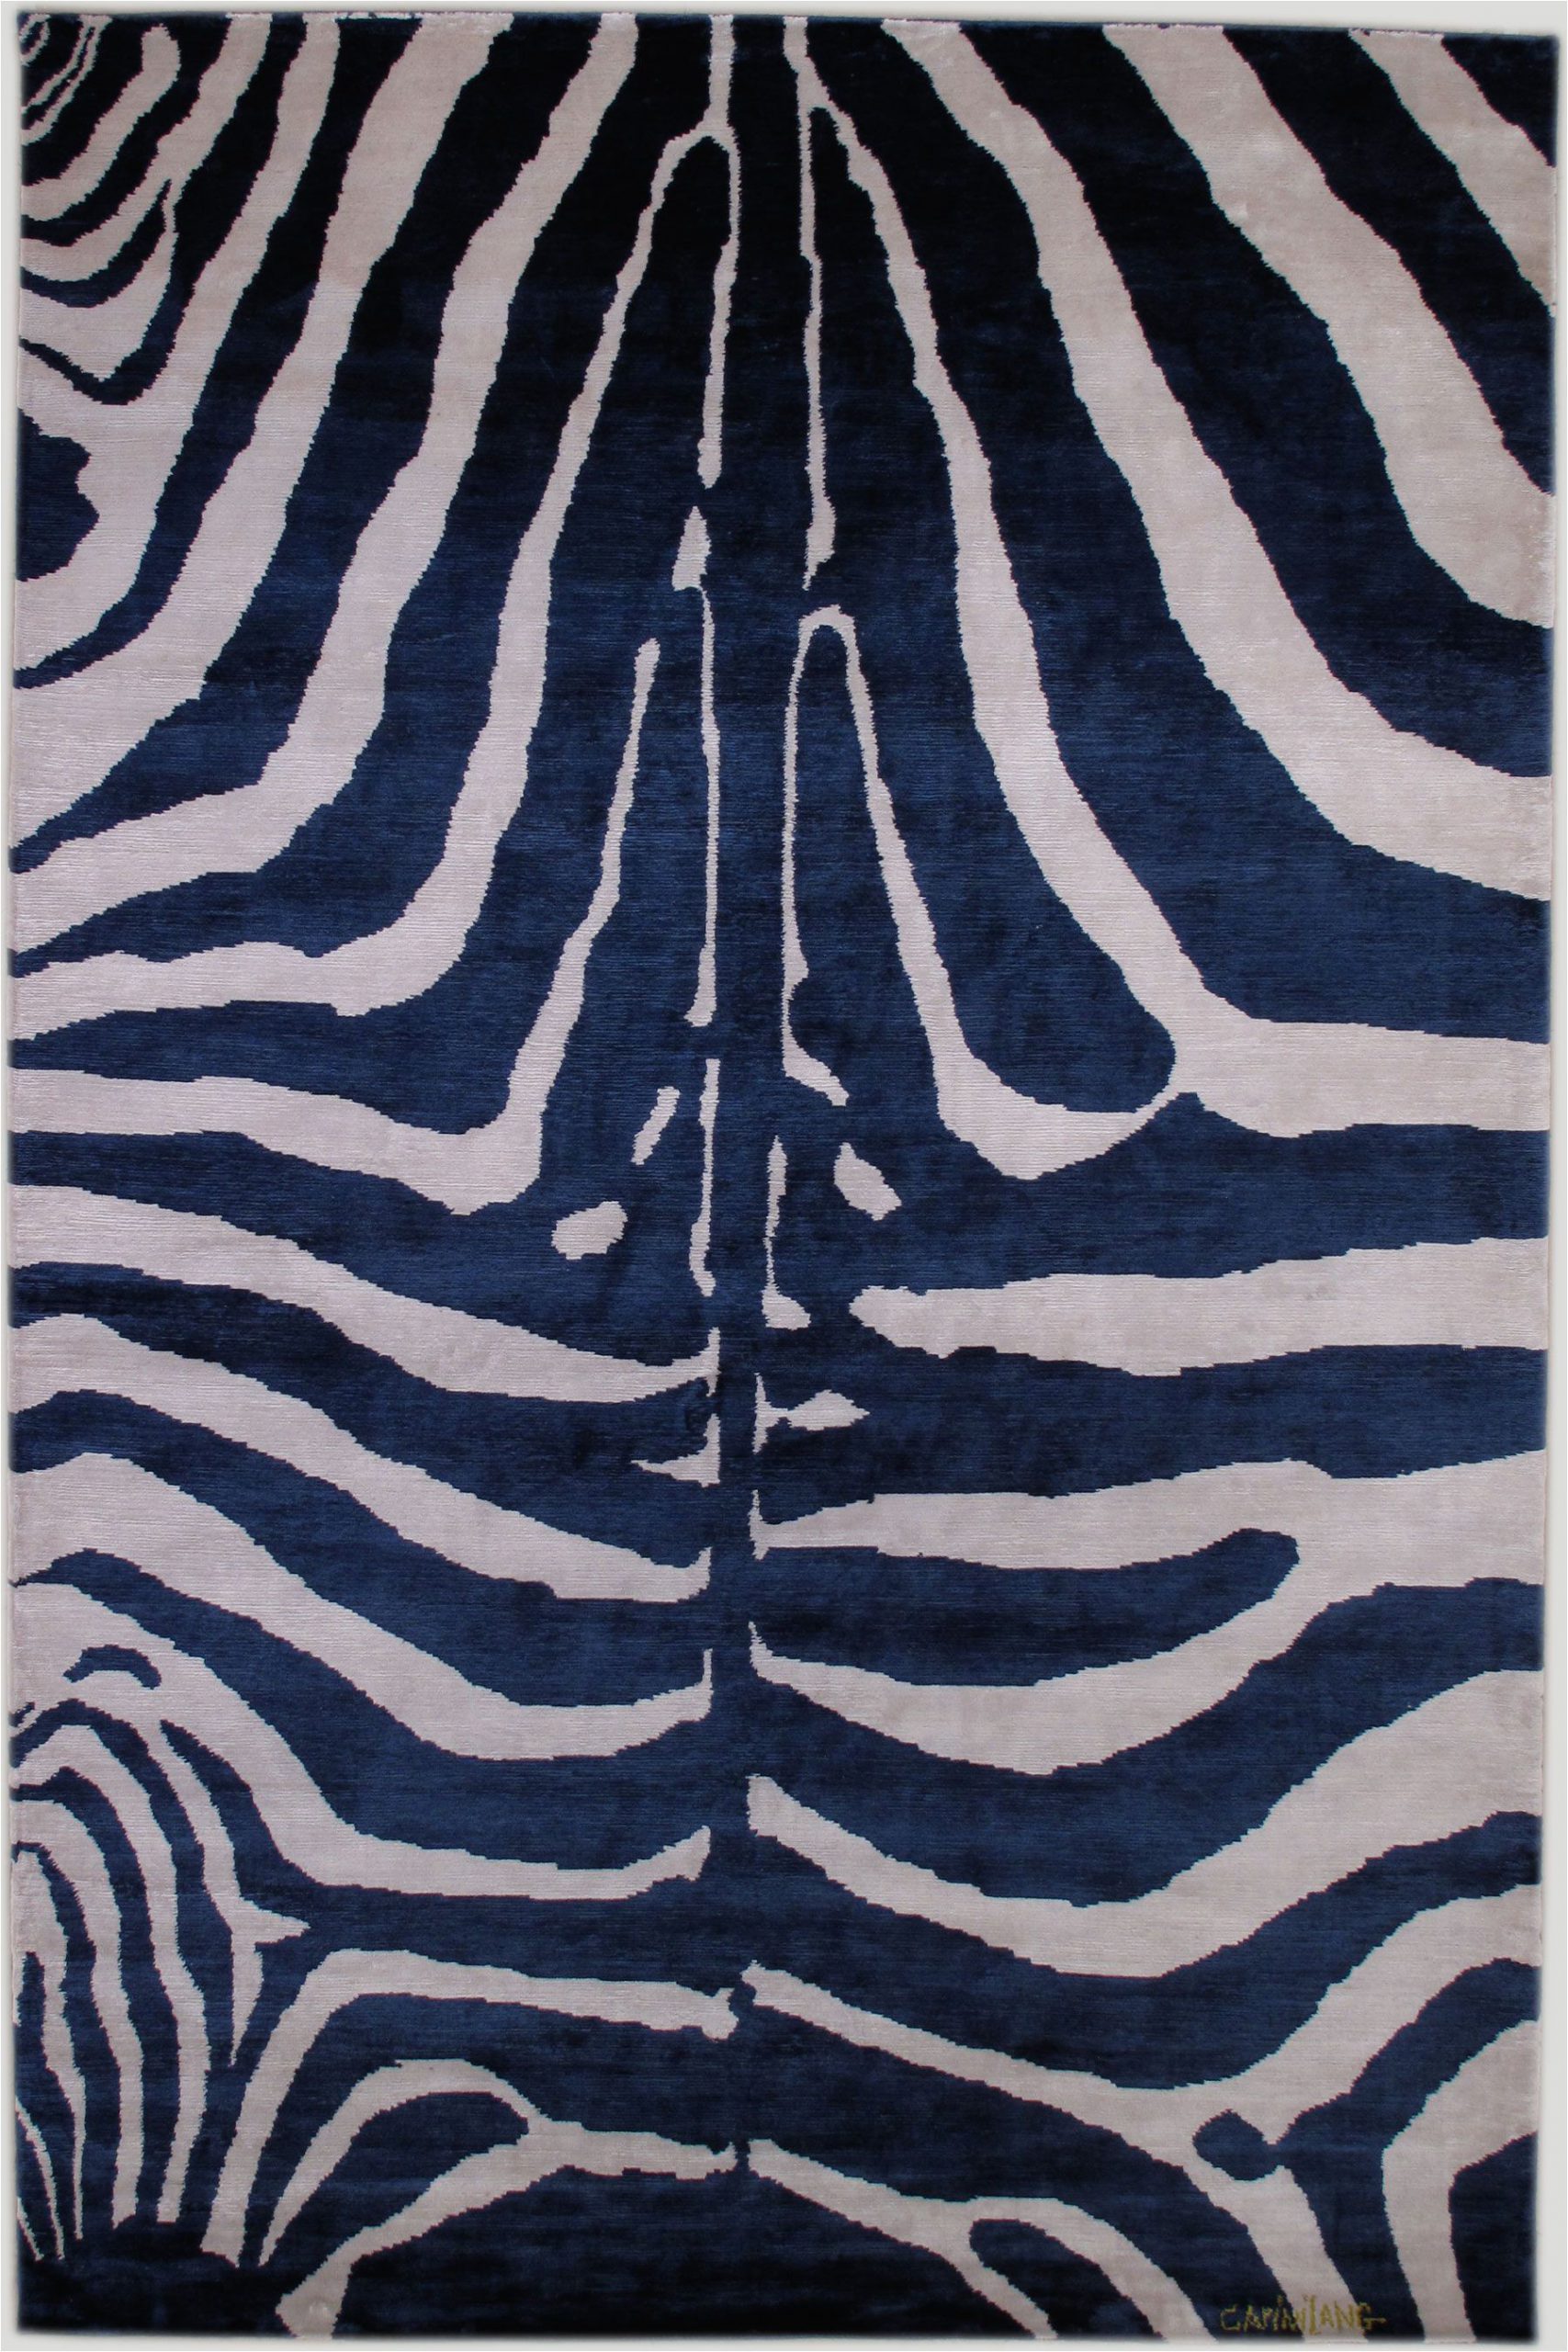 Blue Zebra Print Rug Zebra Indigo Carinilang Indigo Color Carpet Zebra